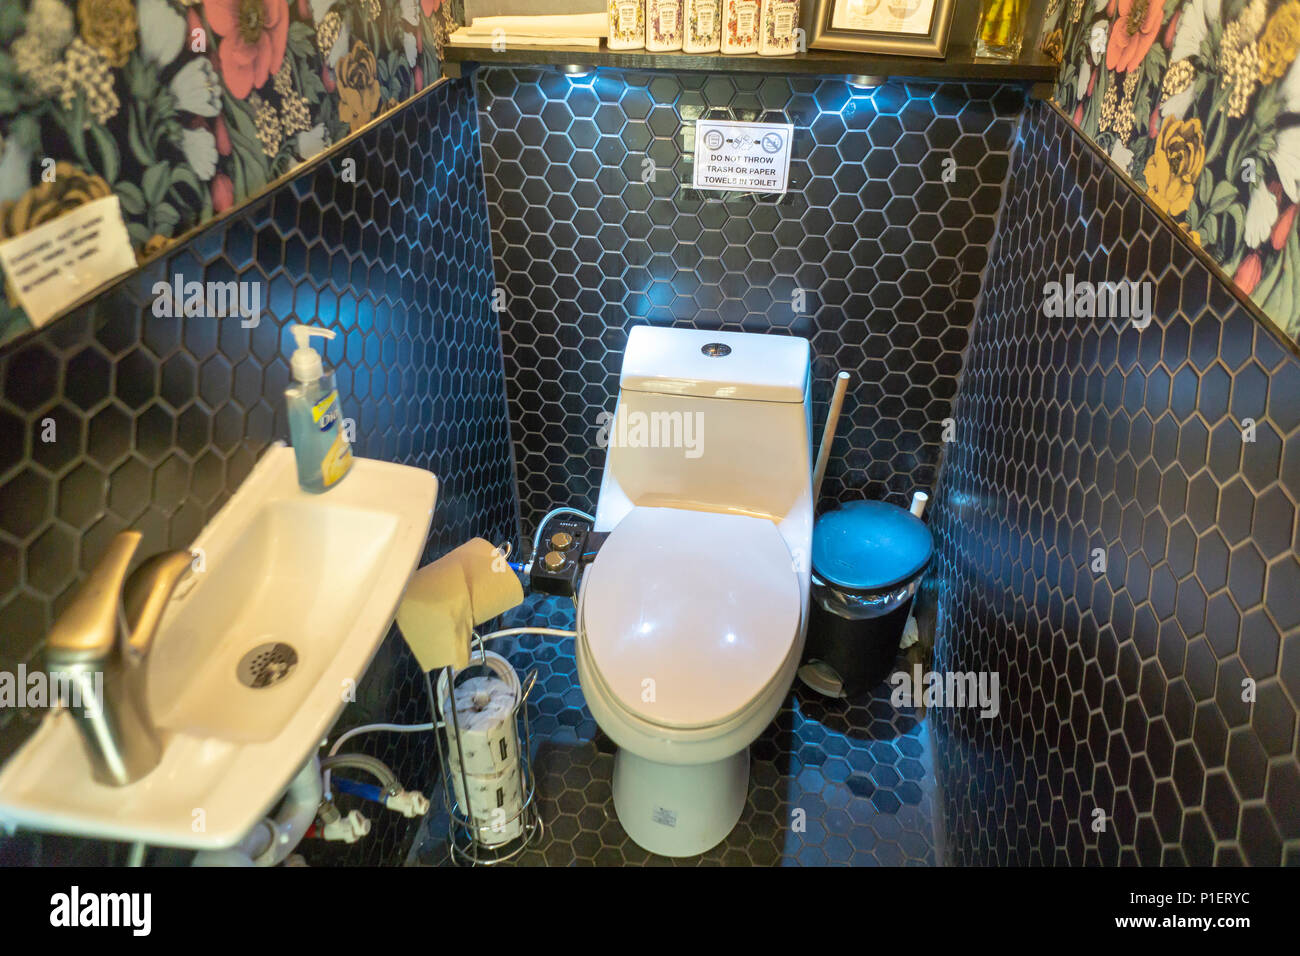 Wc mit Bidet arbeiten Tushy im luxuriösen Badezimmer Marken Tushy und  Poo-Pourri 'poop-up" auf der Bowery in New York am Mittwoch, 30. Mai 2018.  Tushy verkauft seine benutzerfreundliche Bidets, die ihre Toilette